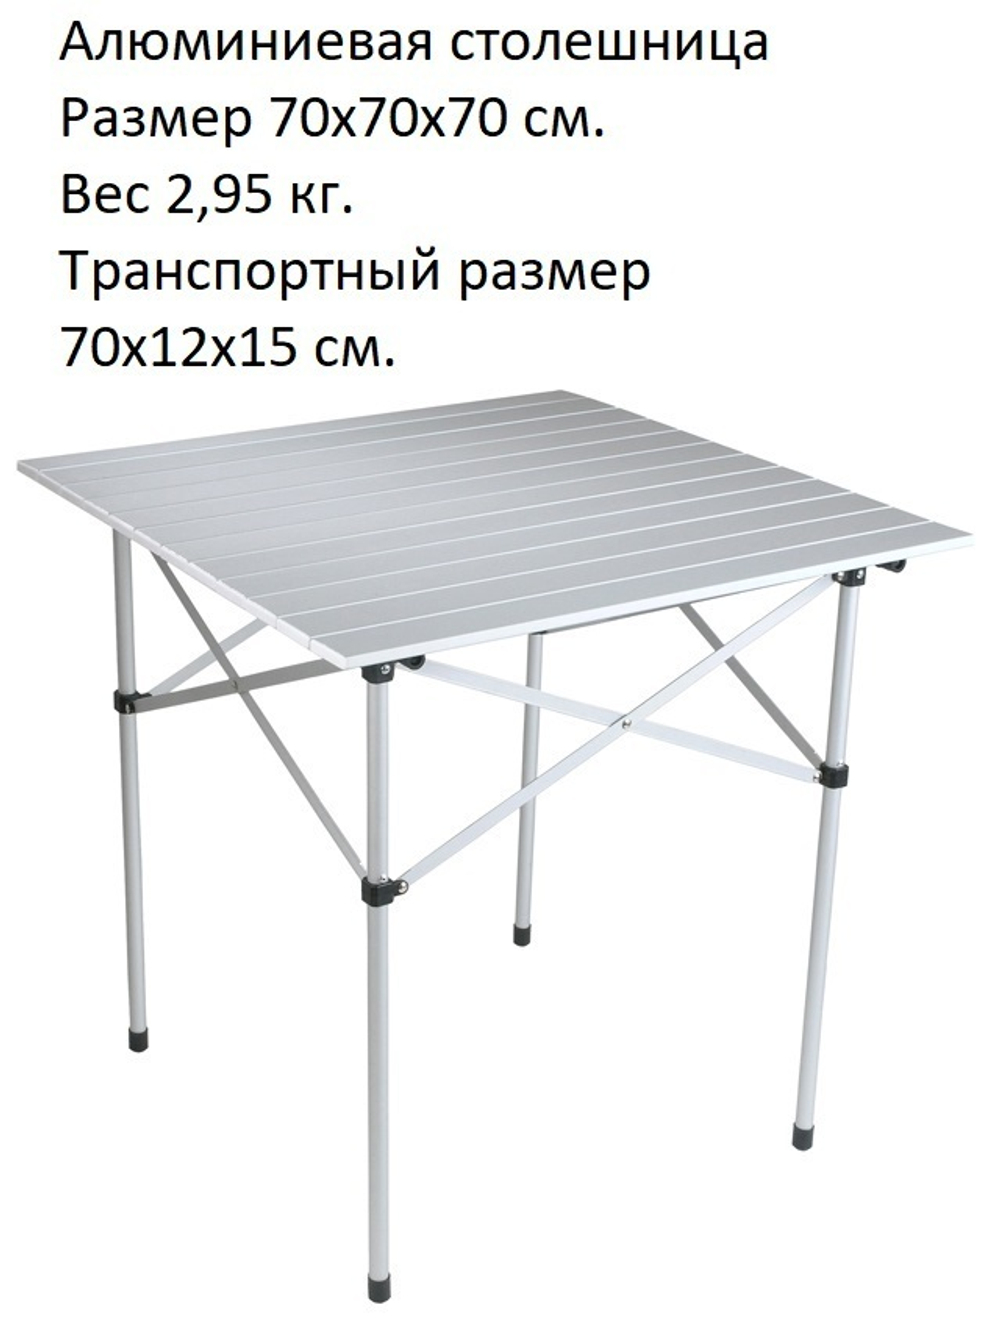 Стол складной, 70х70х70 см, алюминиевая столешница